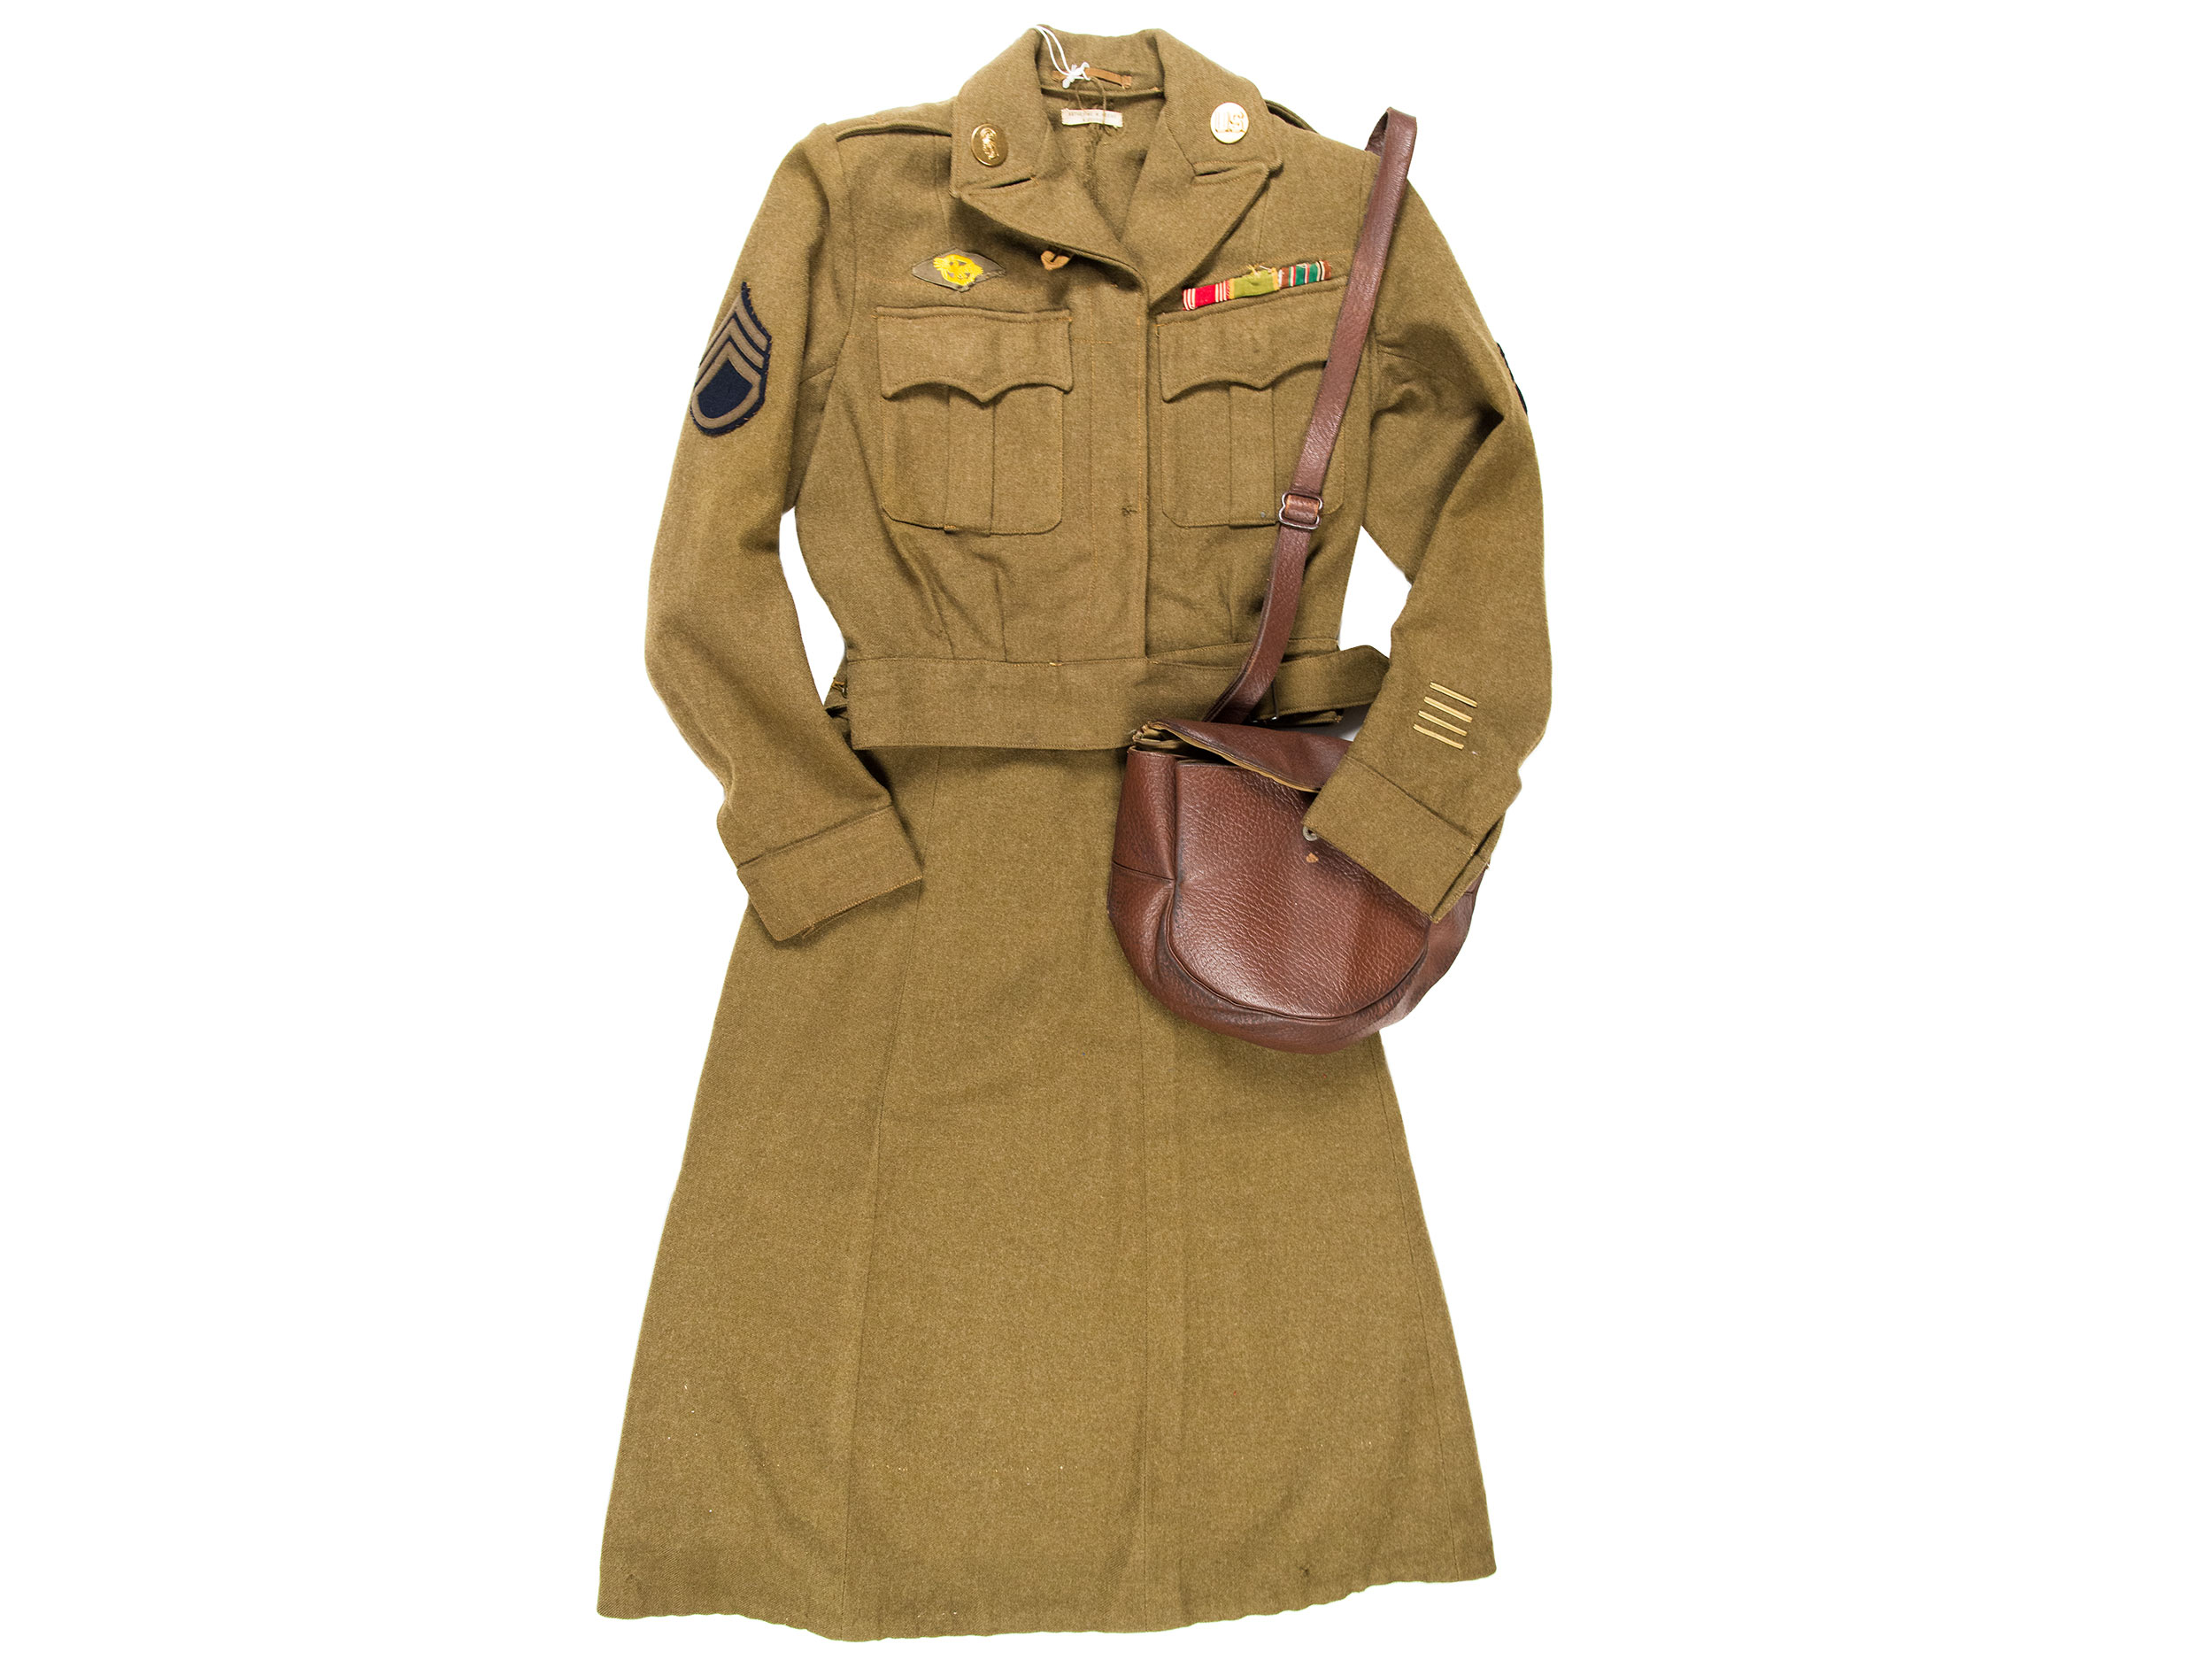 apoyo Glorioso Sentimiento de culpa Women's Army Corps uniform, 1943–1945 — 75 Stories, 75 Years